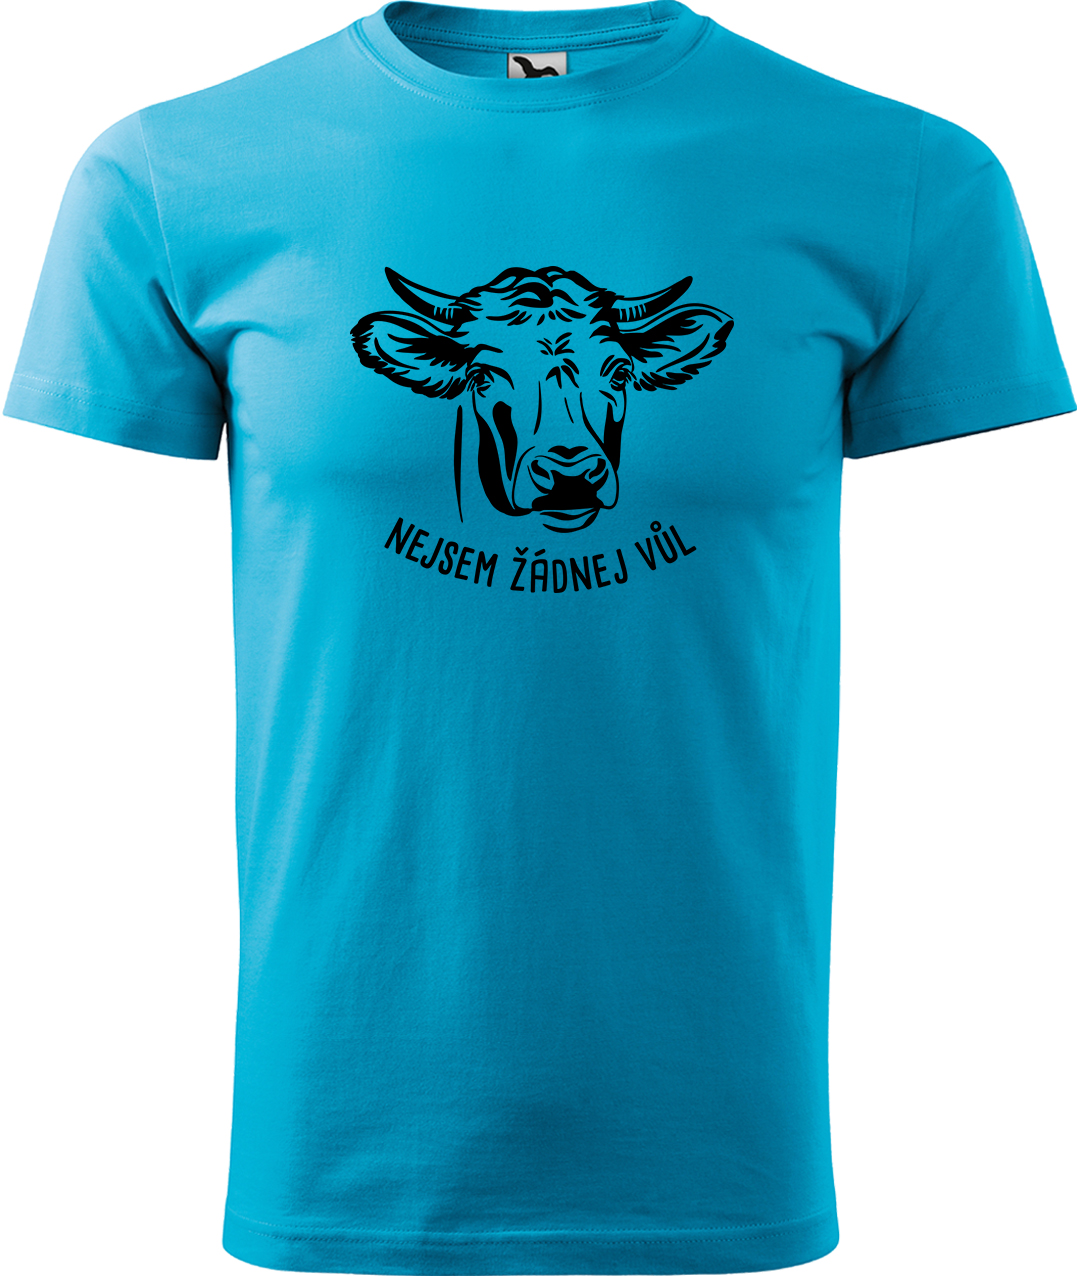 Pánské tričko s krávou - Nejsem žádnej vůl Velikost: M, Barva: Tyrkysová (44), Střih: pánský